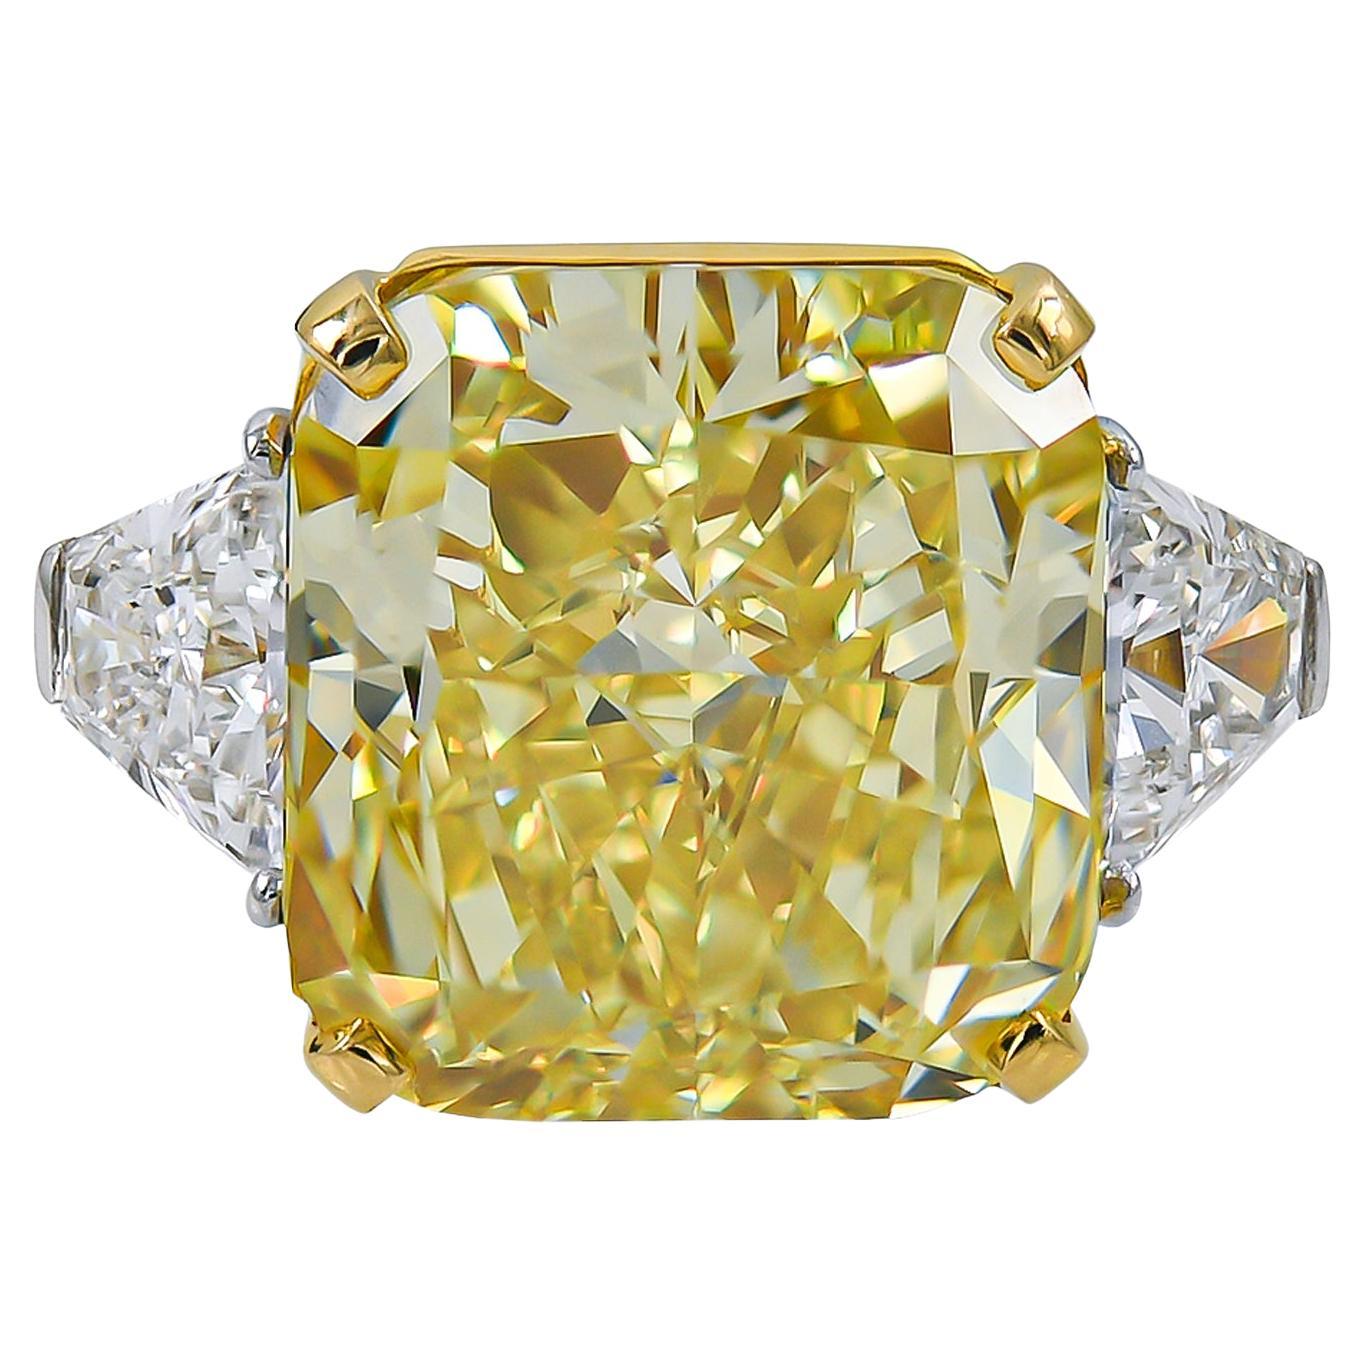 Spectra Fine Jewelry GIA zertifiziert 22,86 Karat Ausgefallener lebhaft gelber Diamantring